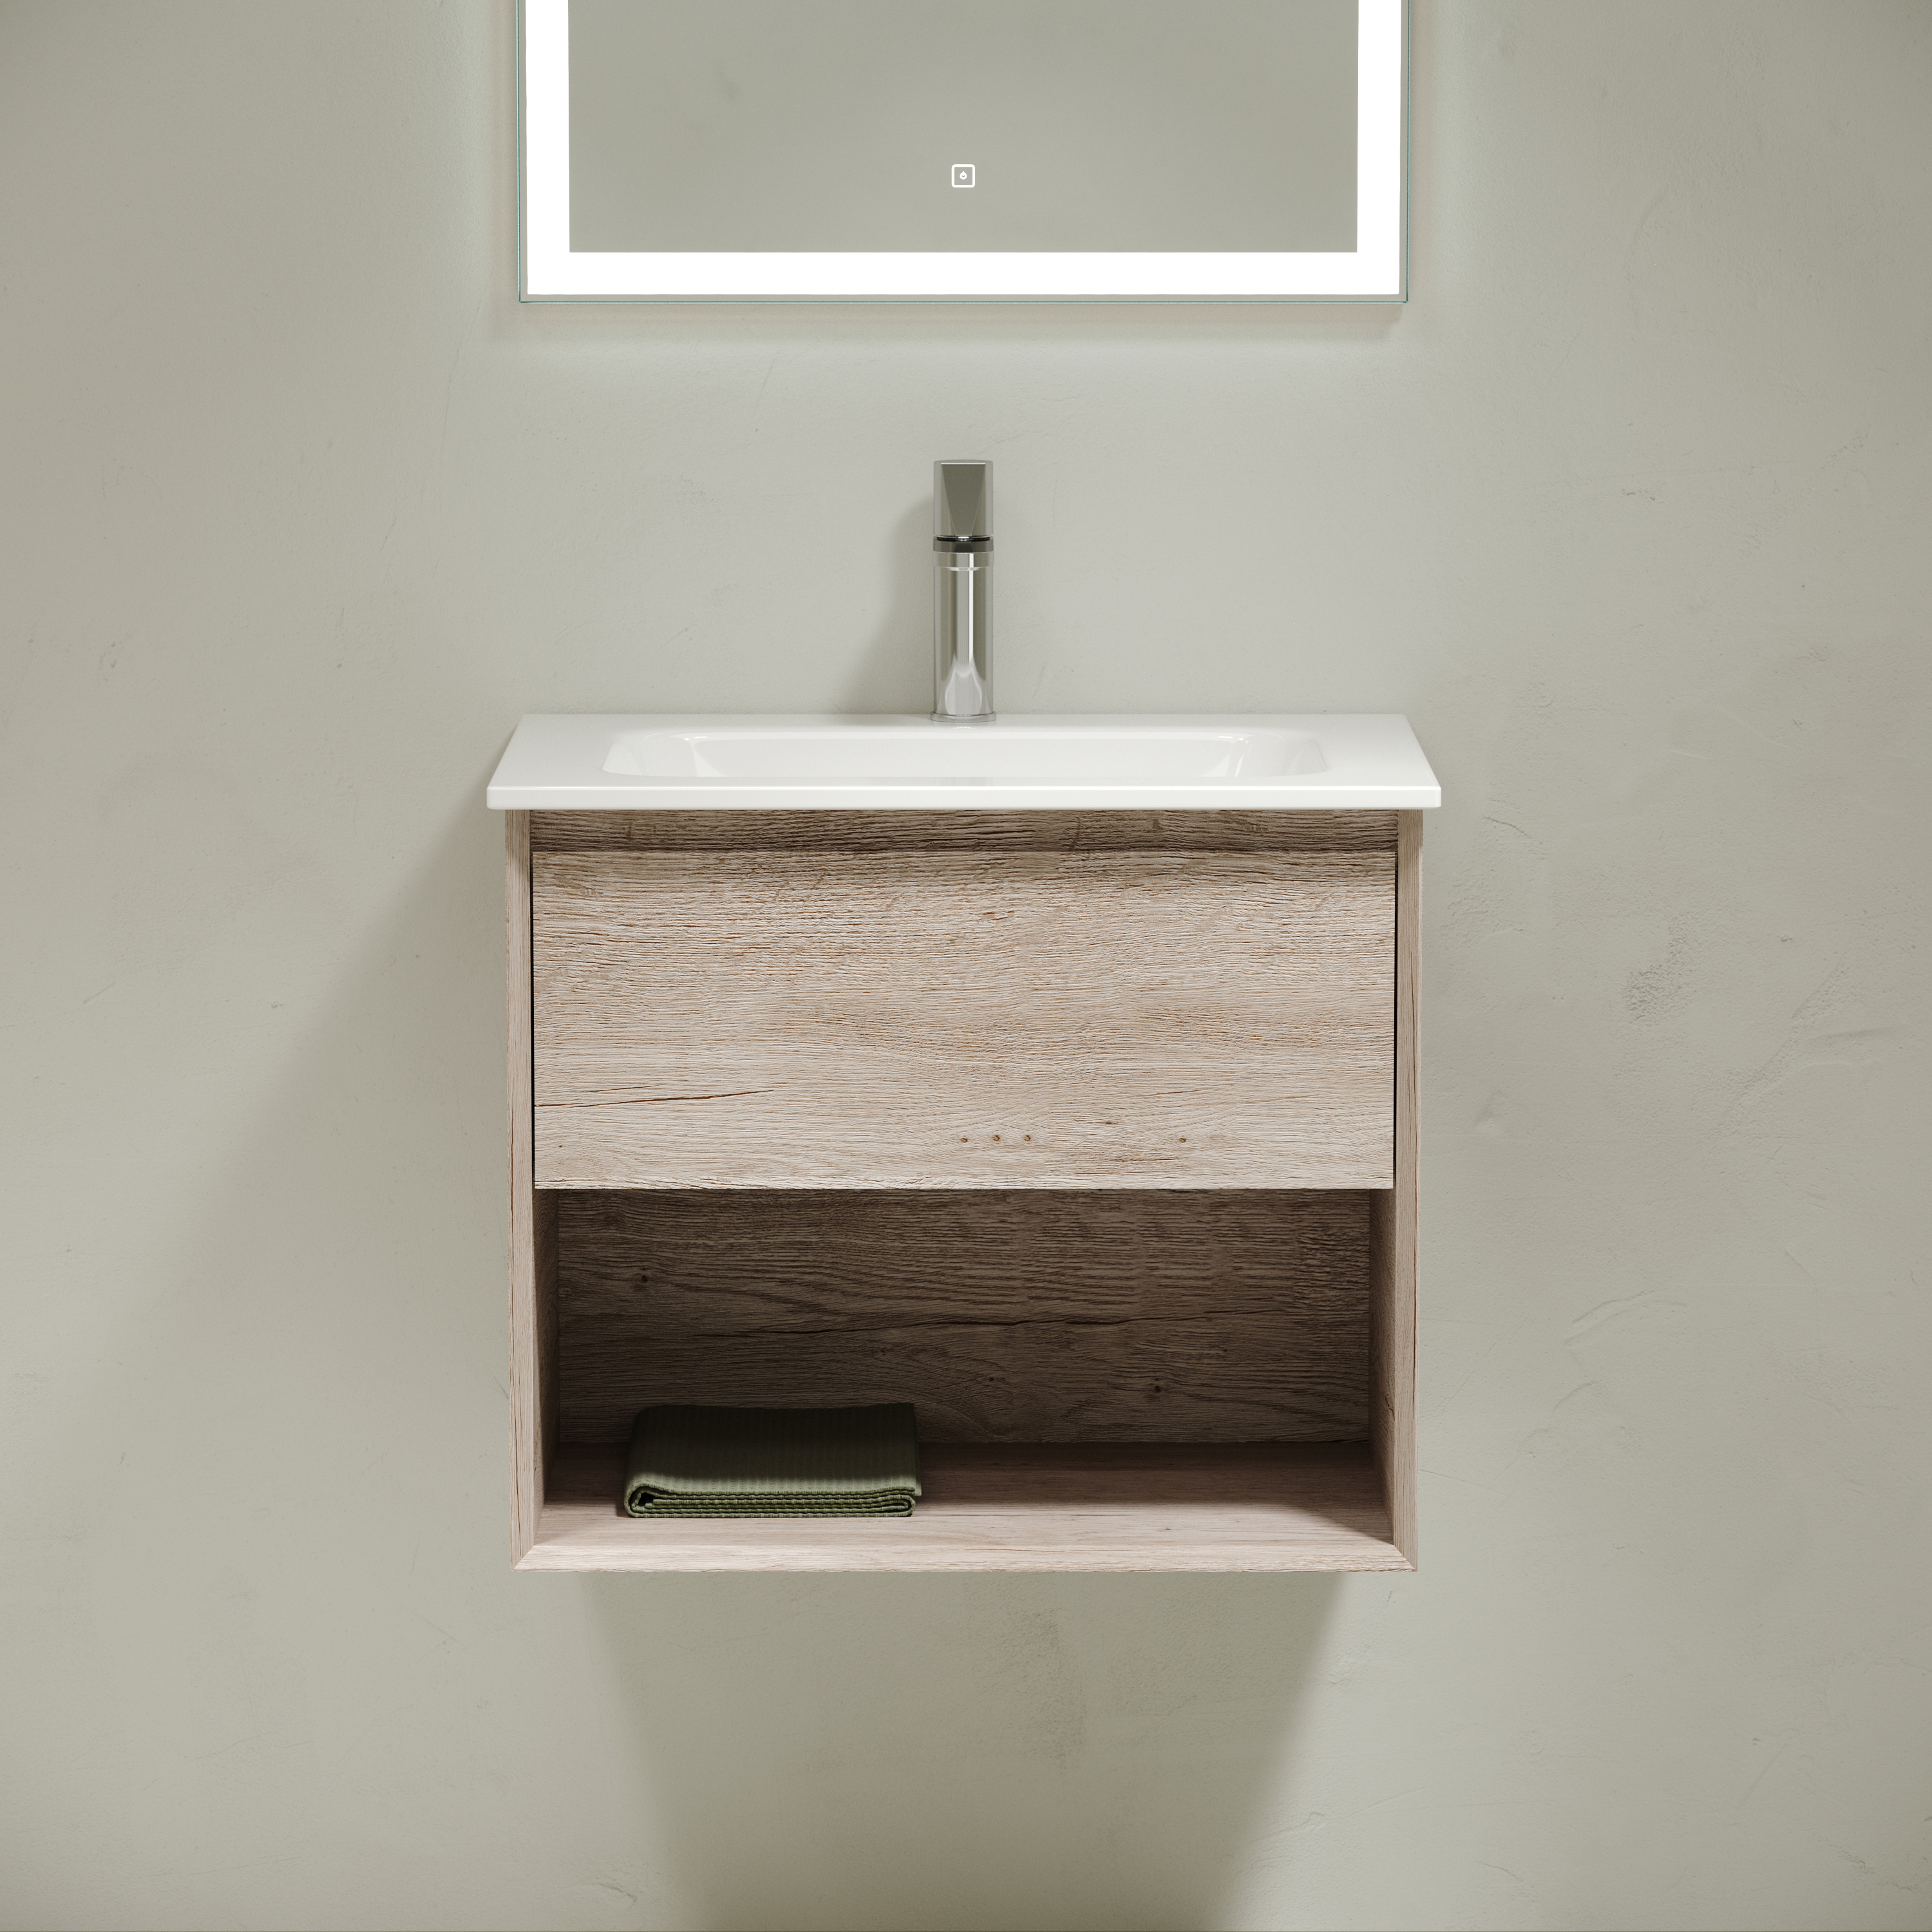 Мебель для ванной комнаты Sancos Marmi 1.0 60 см дуб галифакс натуральный, цвет коричневый MR1.060EG - фото 2